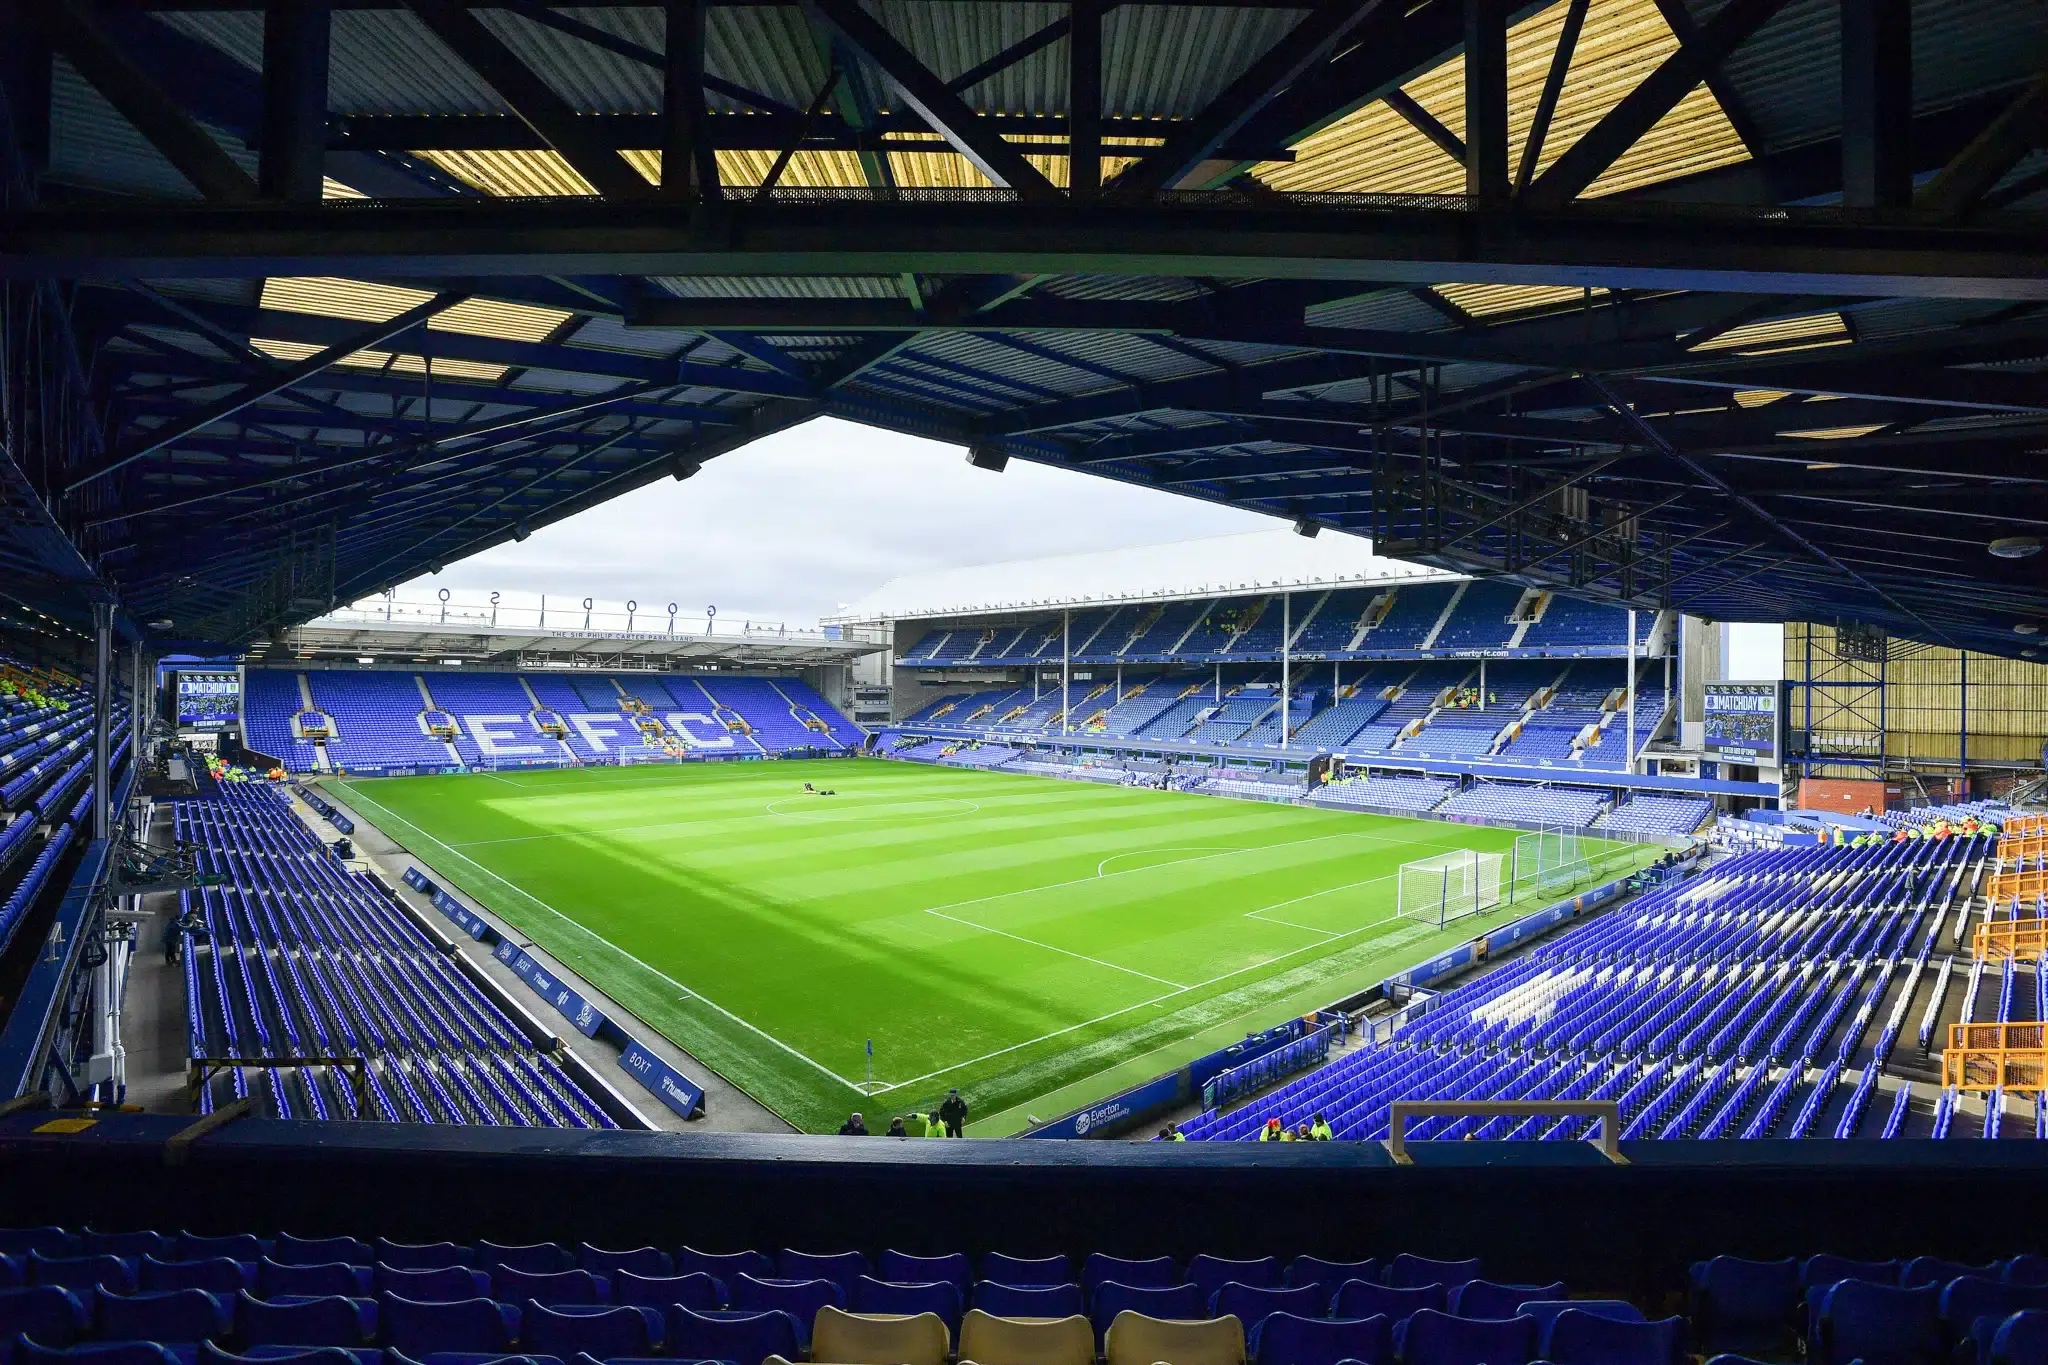 Sân vận động Goodison Park - Biểu tượng hào hùng của Everton Football Club